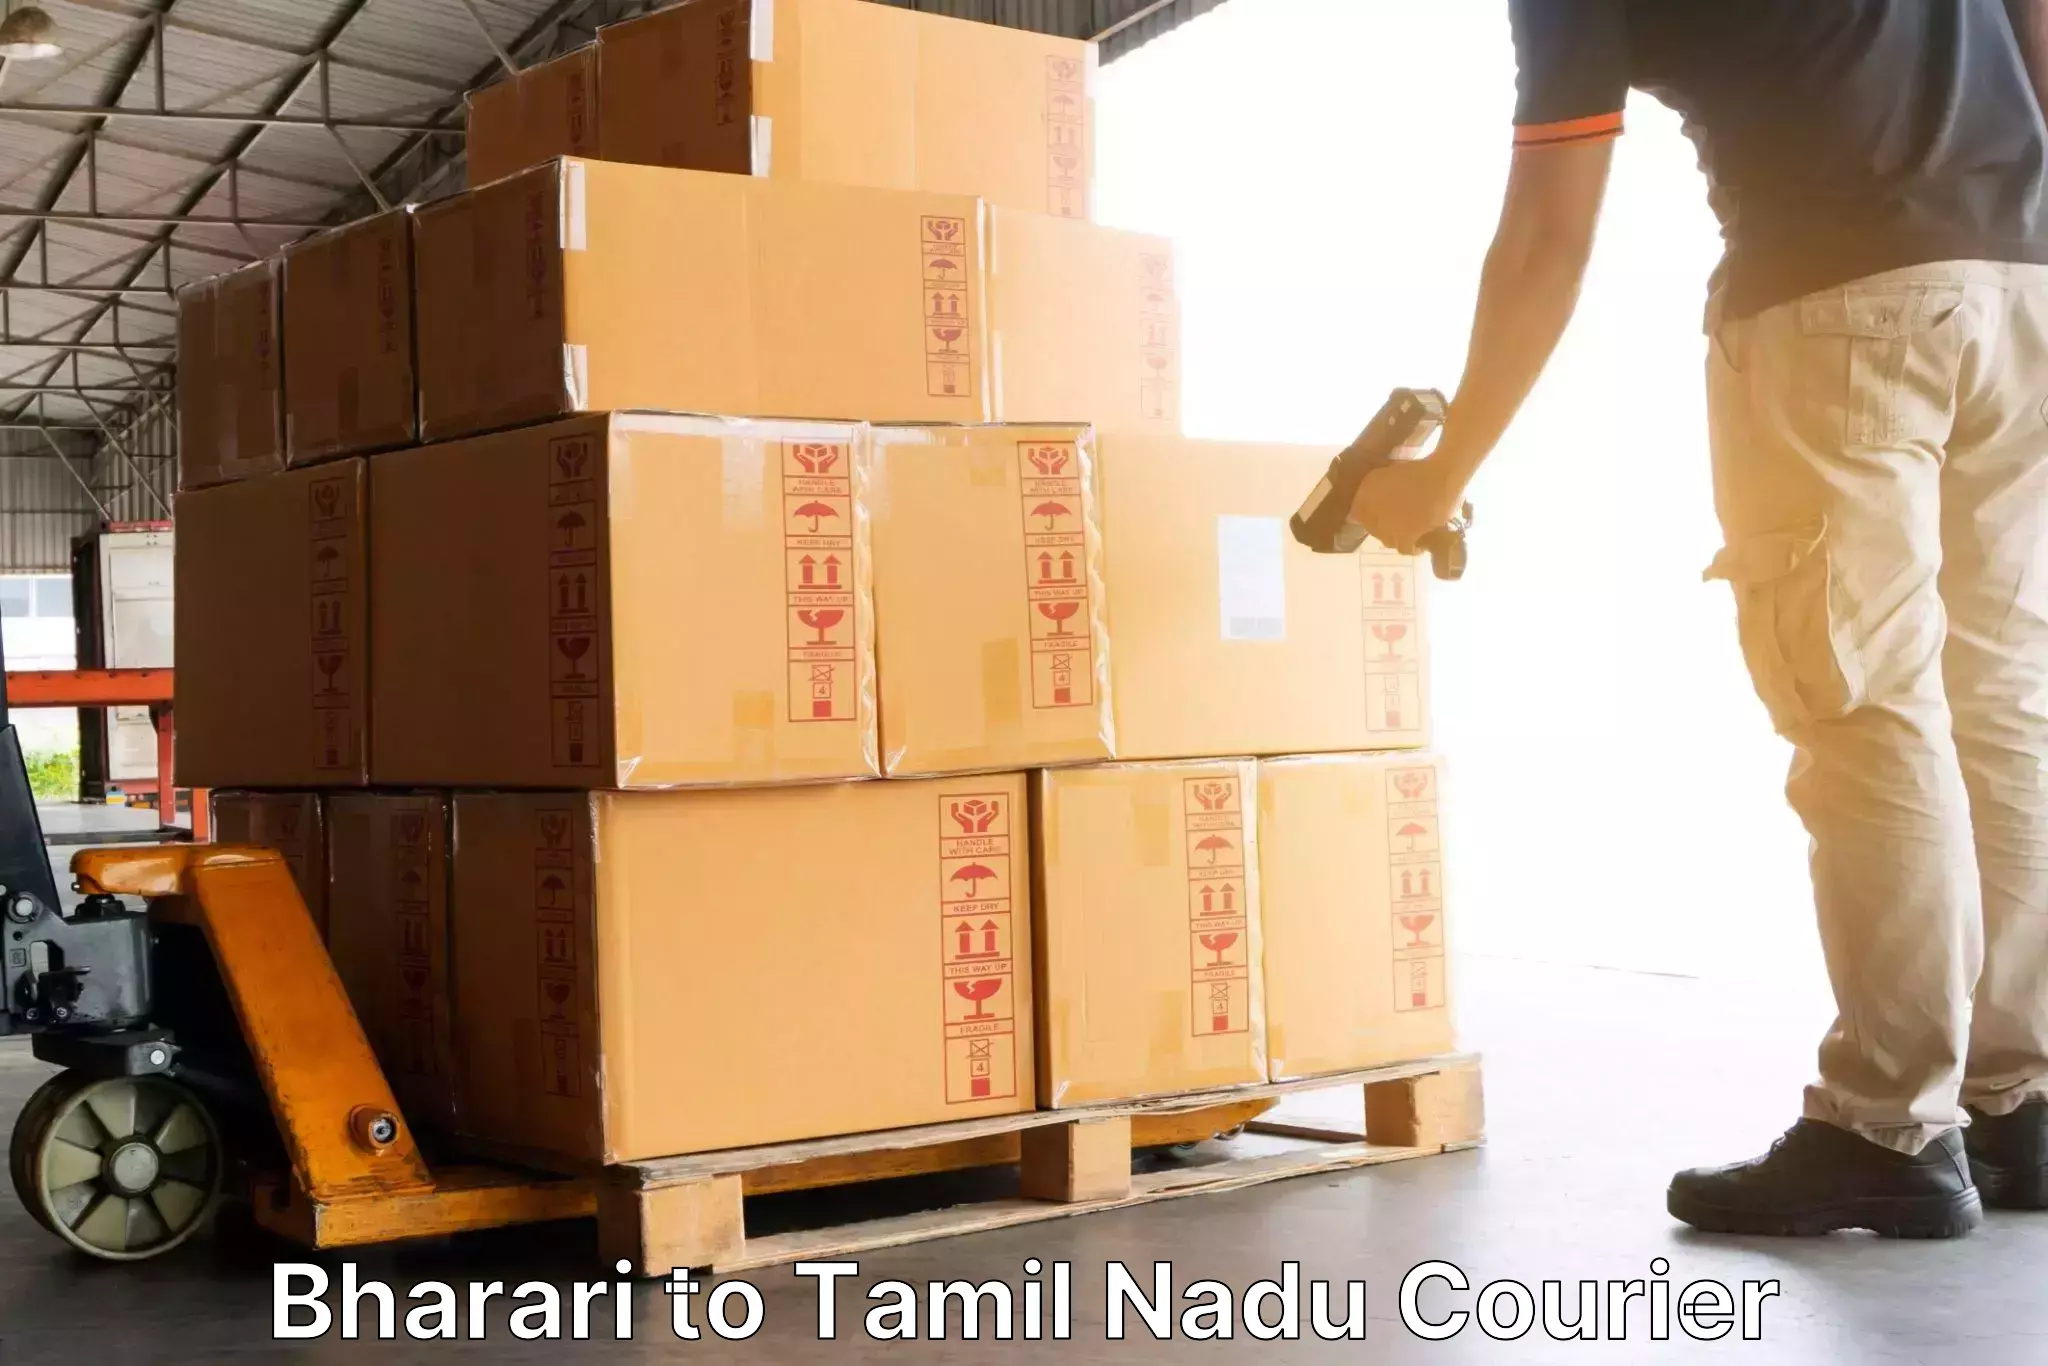 24-hour courier service Bharari to NIT Tiruchirapalli